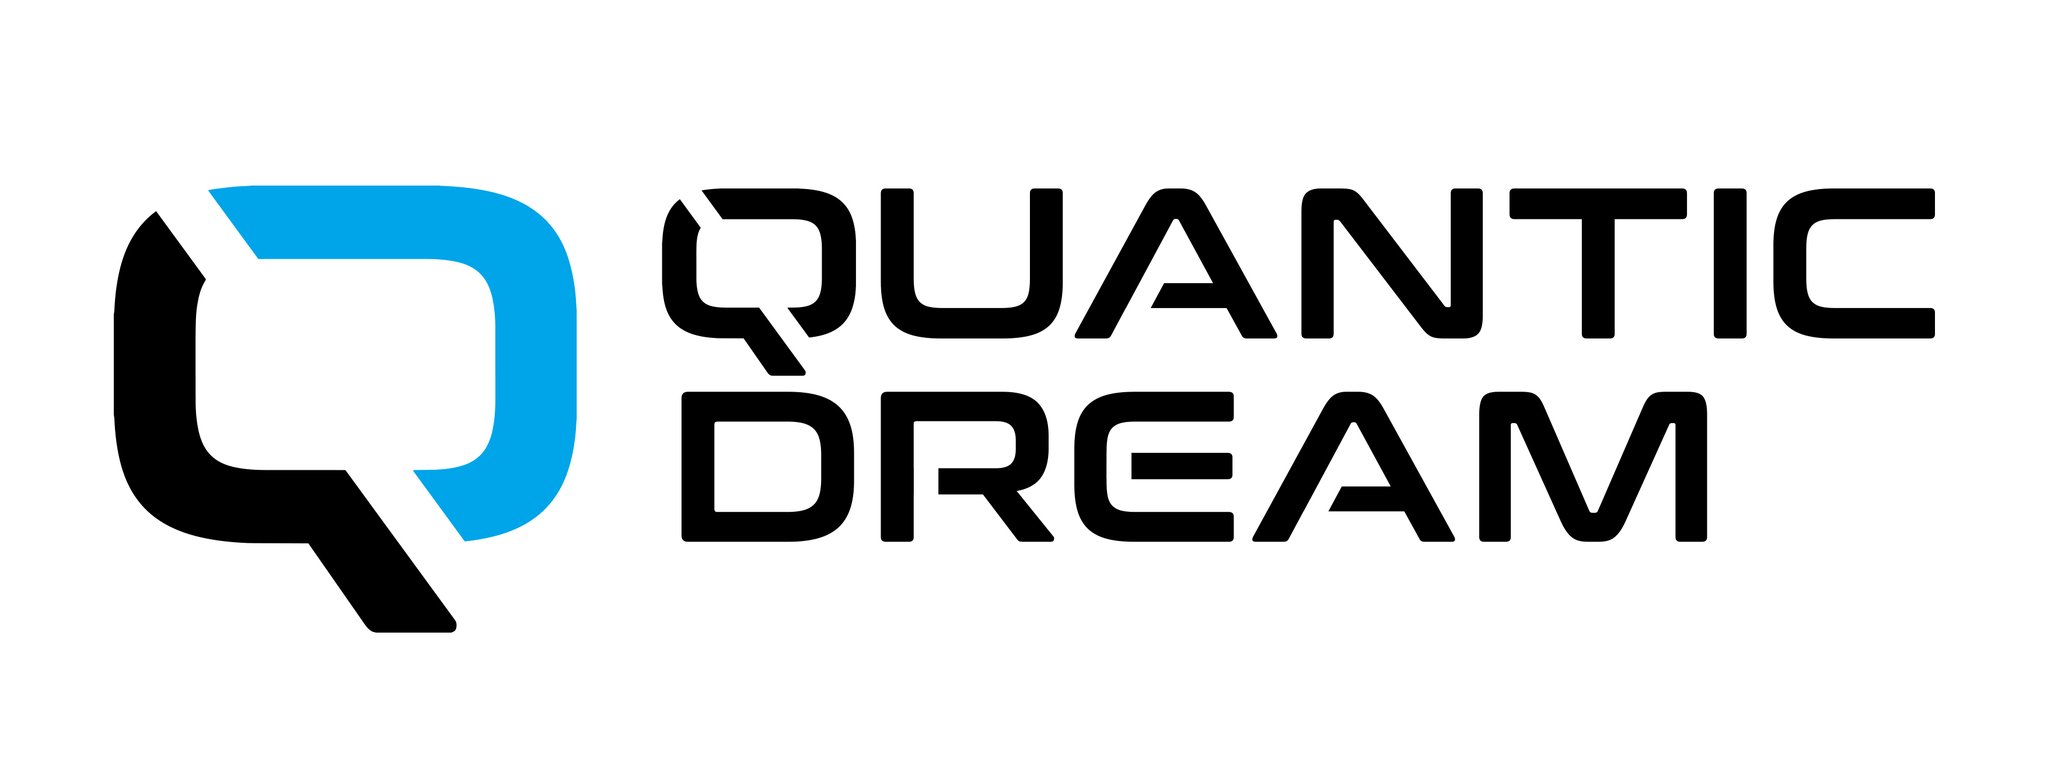 quantic dream video games